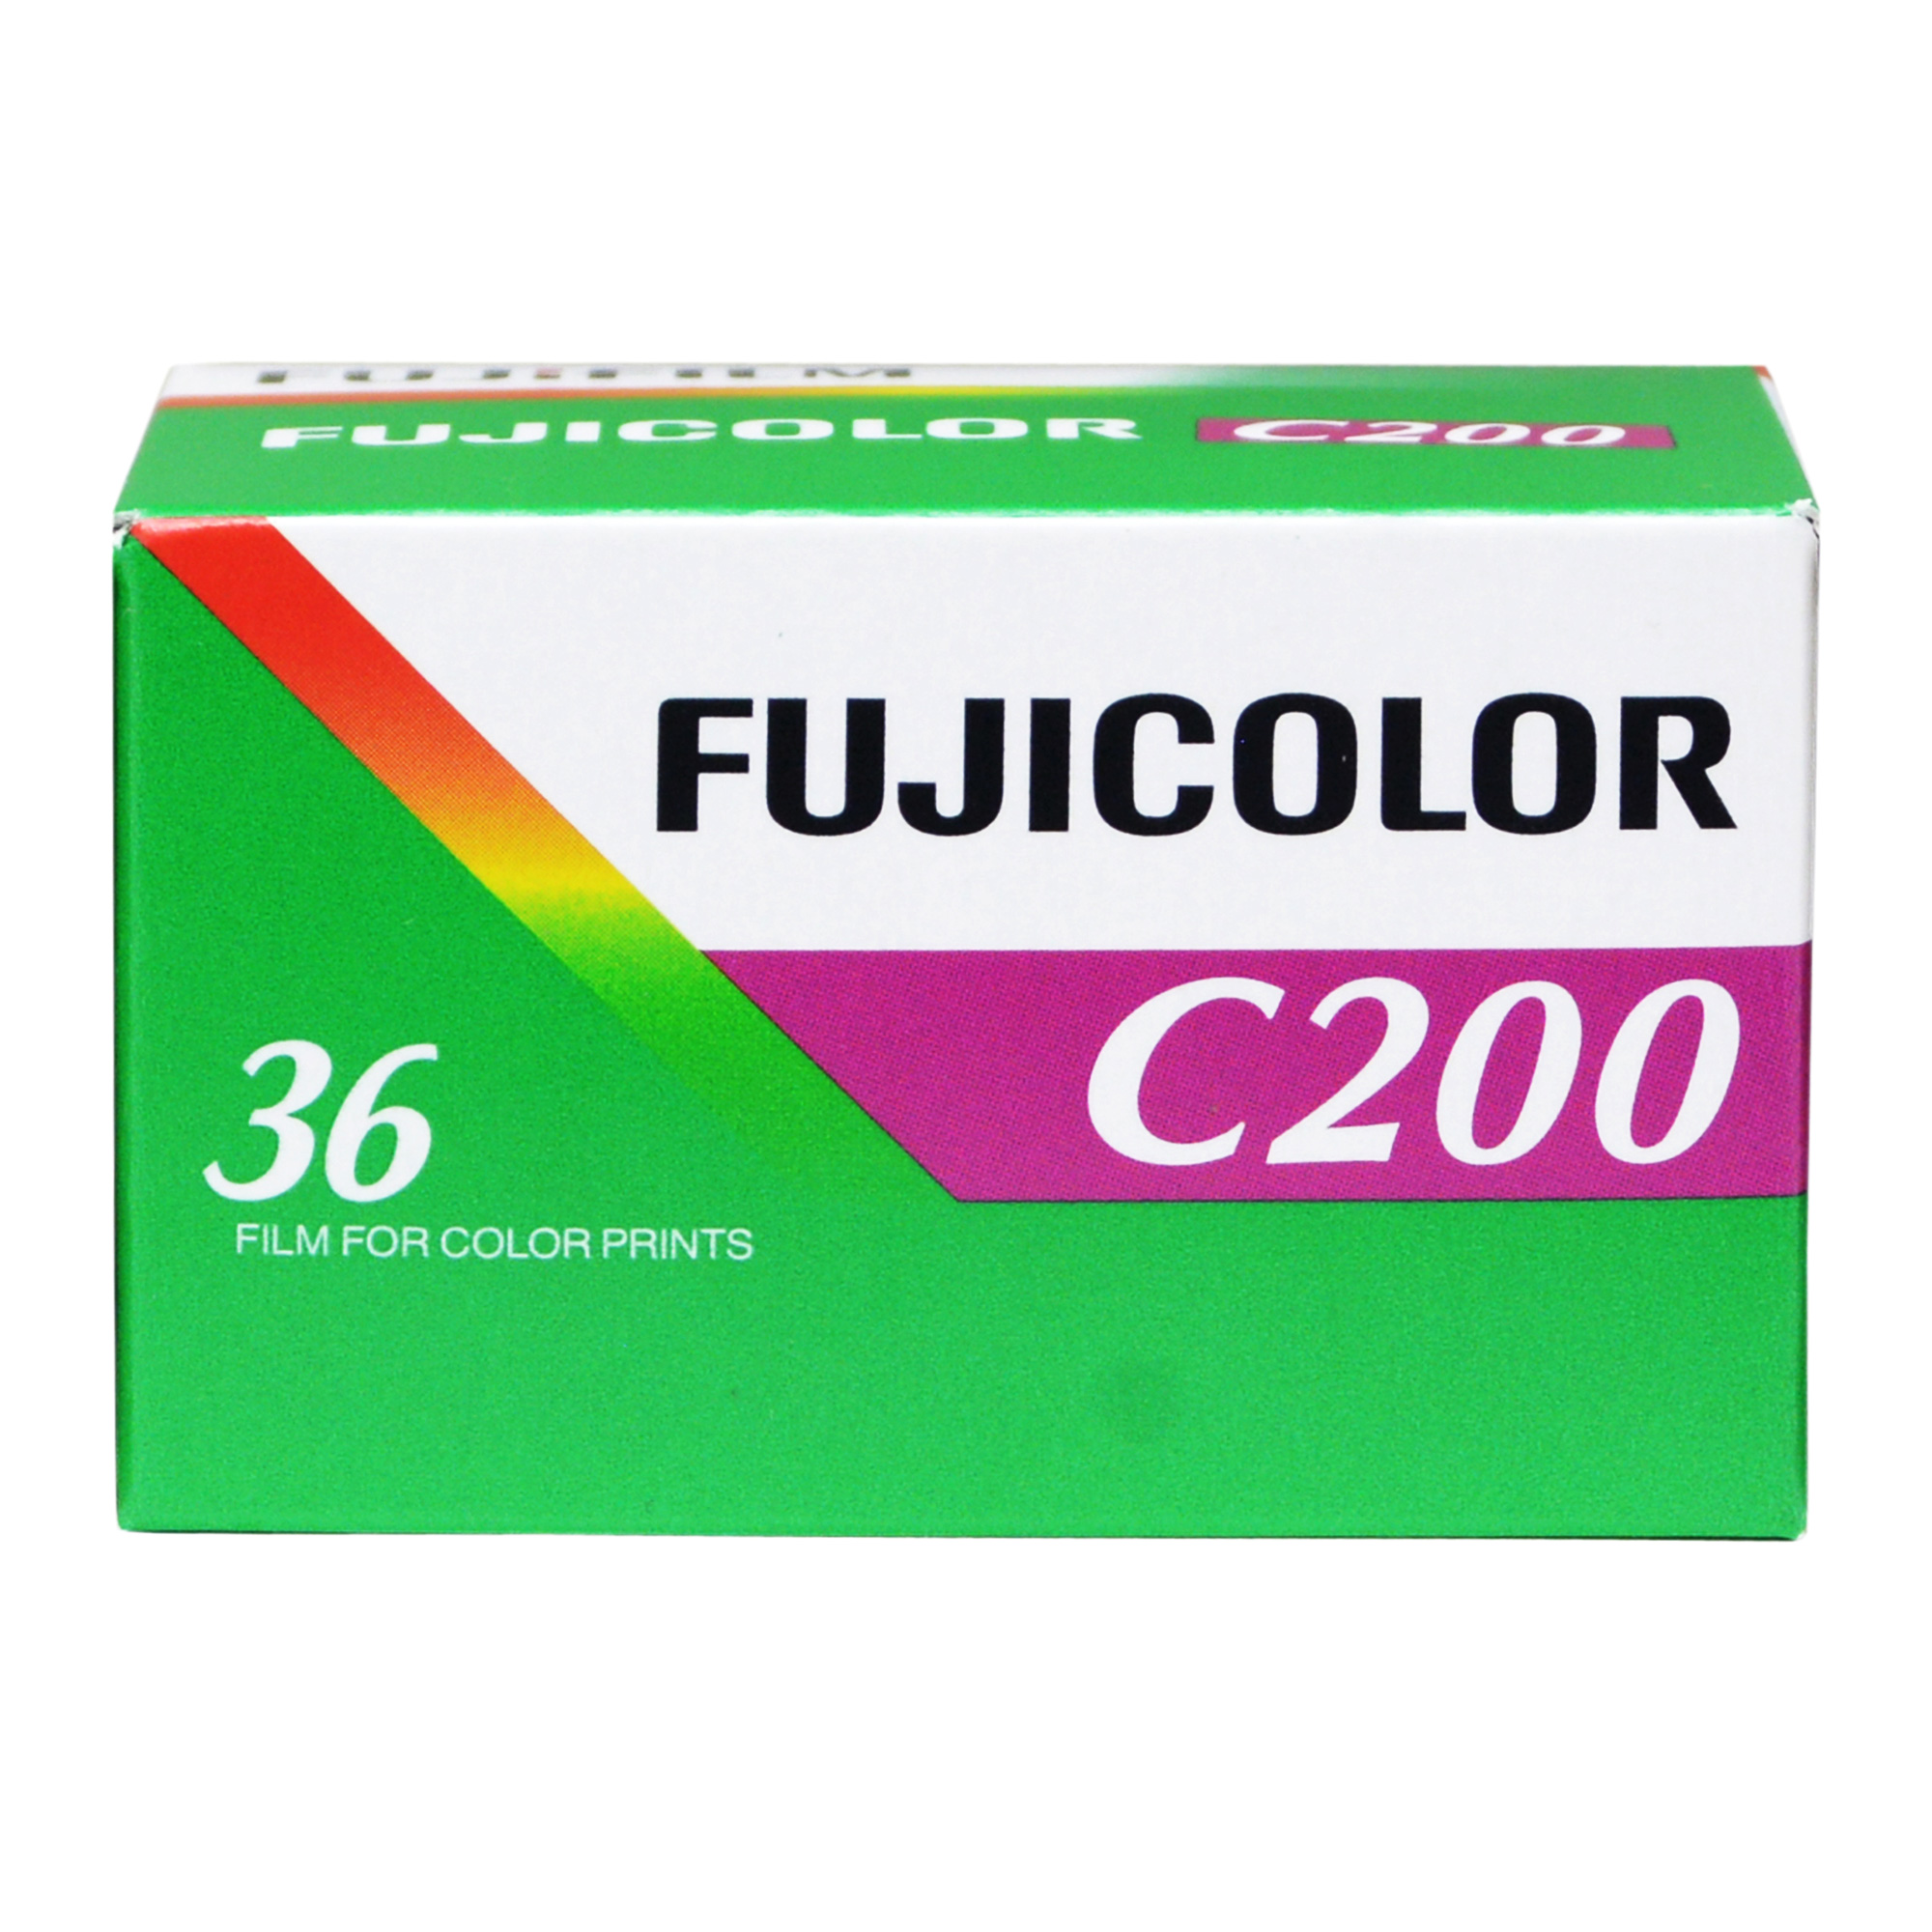 Fujicolor C200 35mm - 36